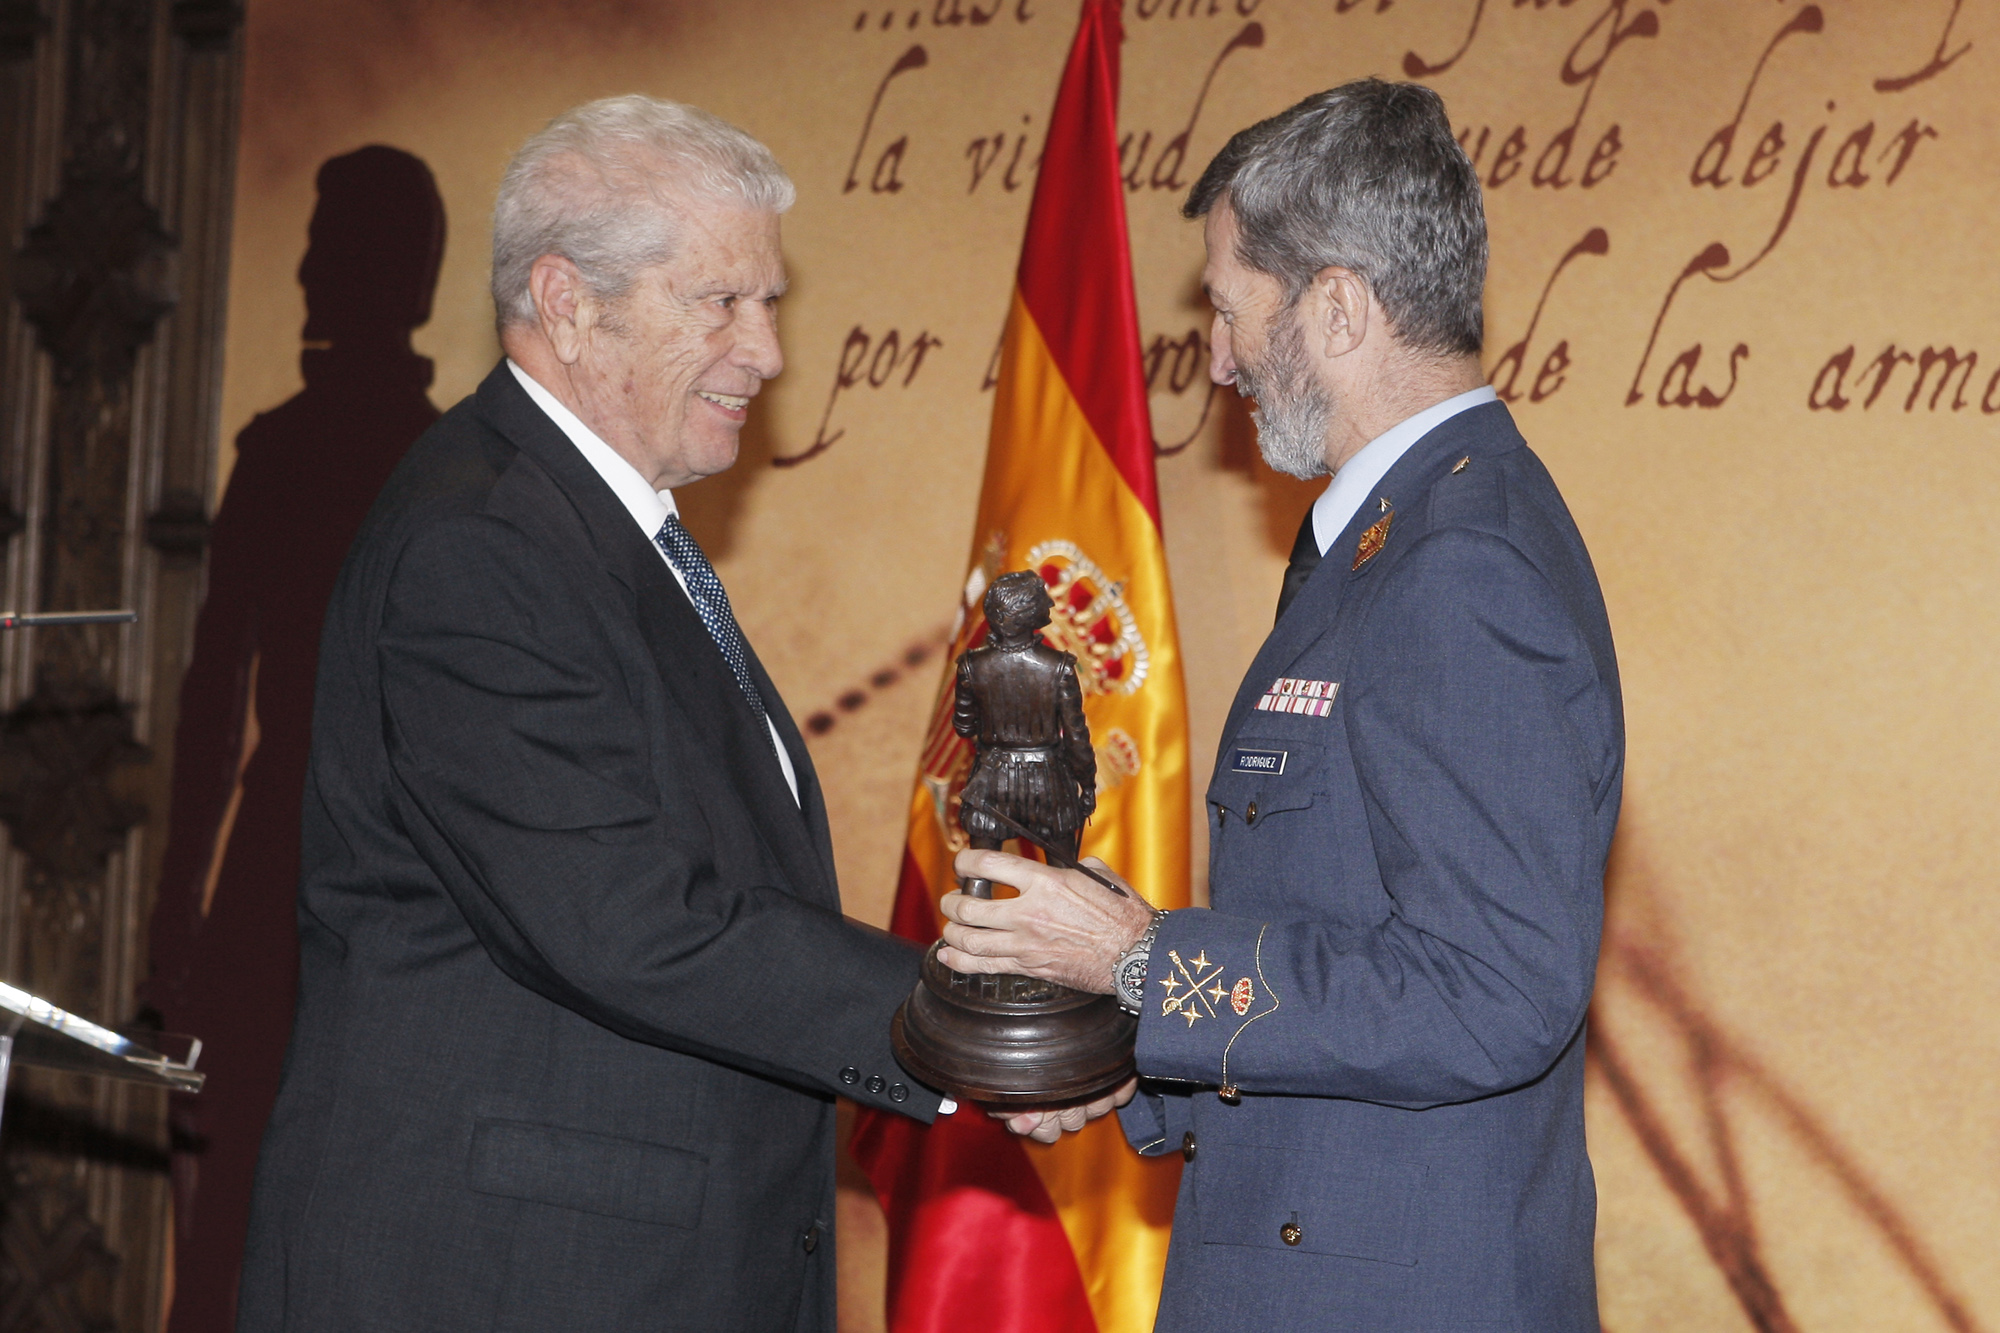 Javier Solana, Premio Extraordinario de Defensa 2009